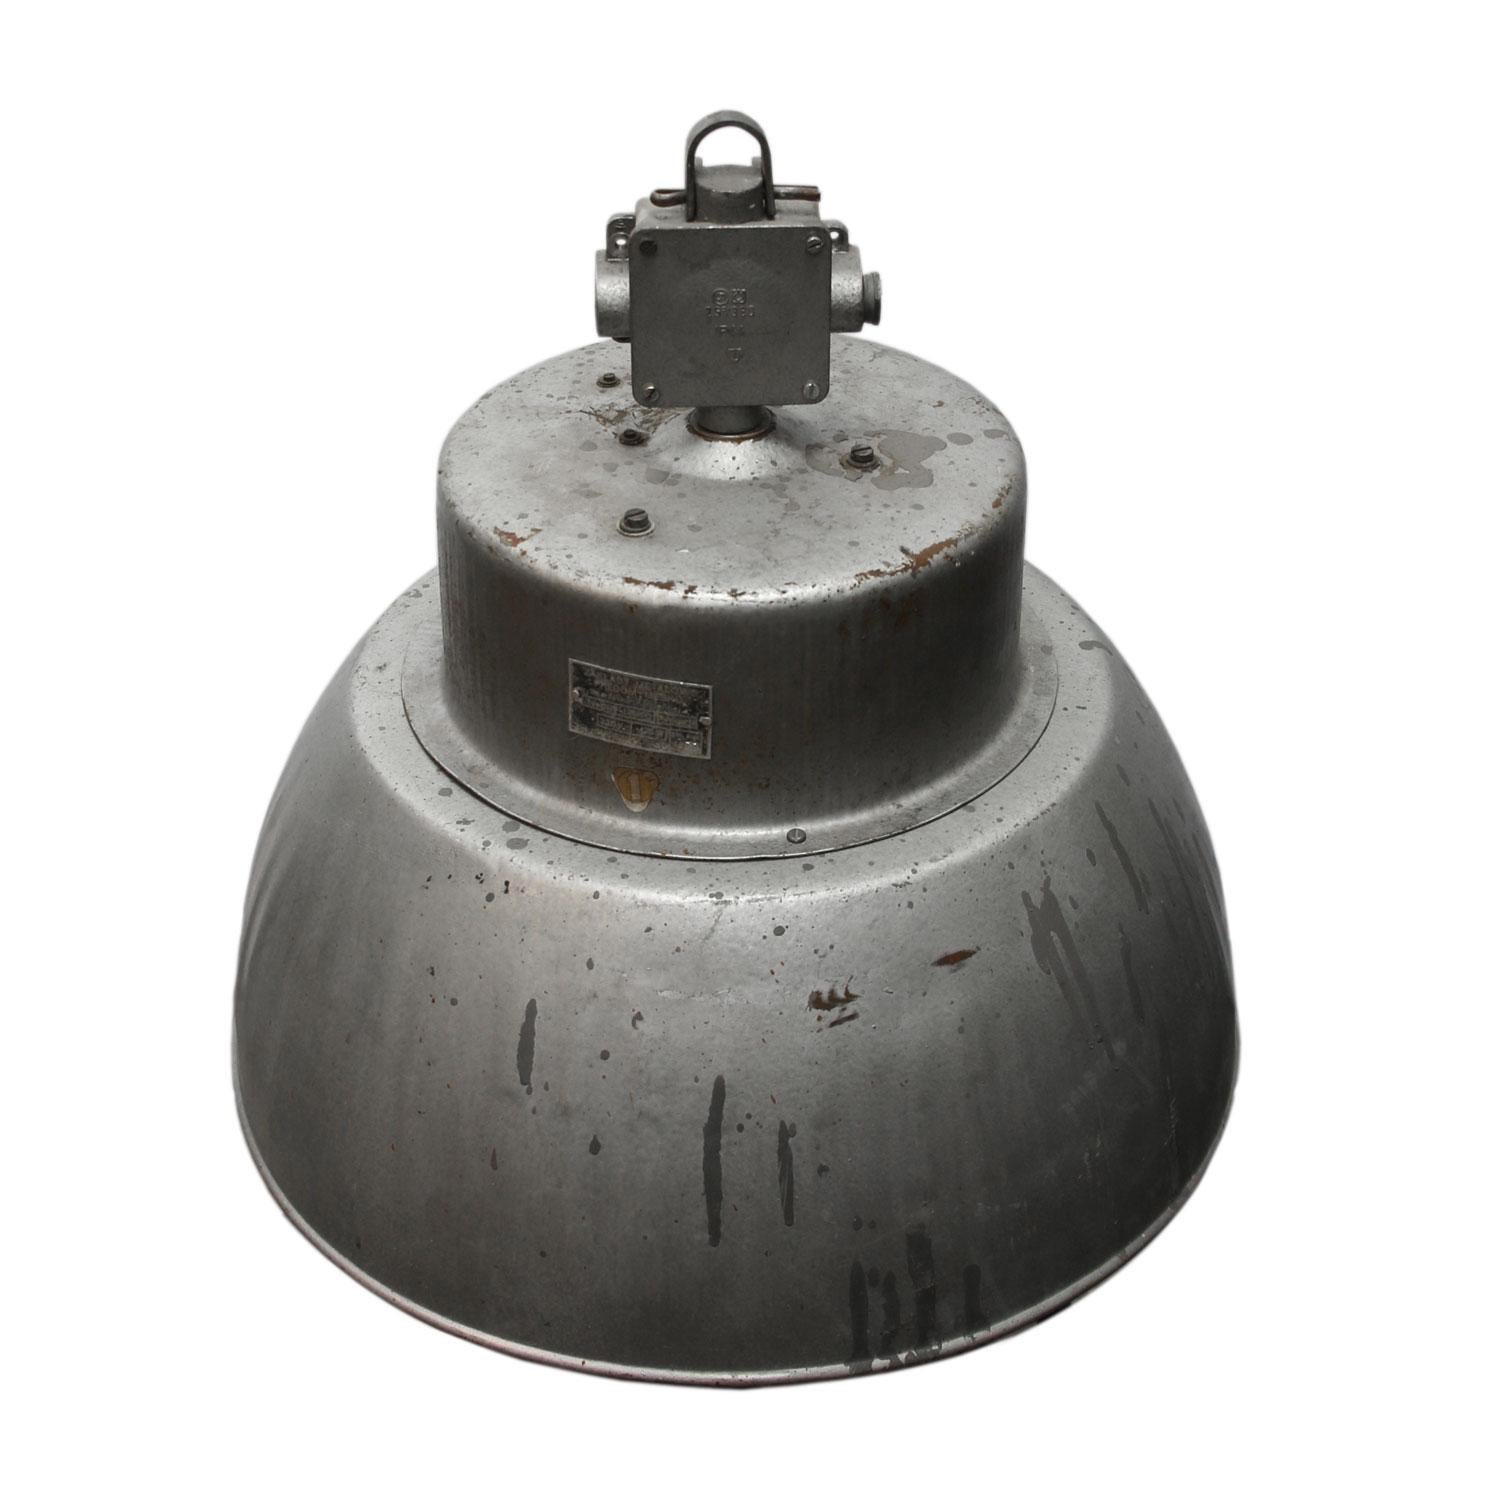 Lampe à suspension industrielle
Coup de marteau en aluminium gris

Poids : 4.00 kg / 8.8 lb

Le prix est fixé par article individuel. Toutes les lampes ont été rendues conformes aux normes internationales pour les ampoules à incandescence, les